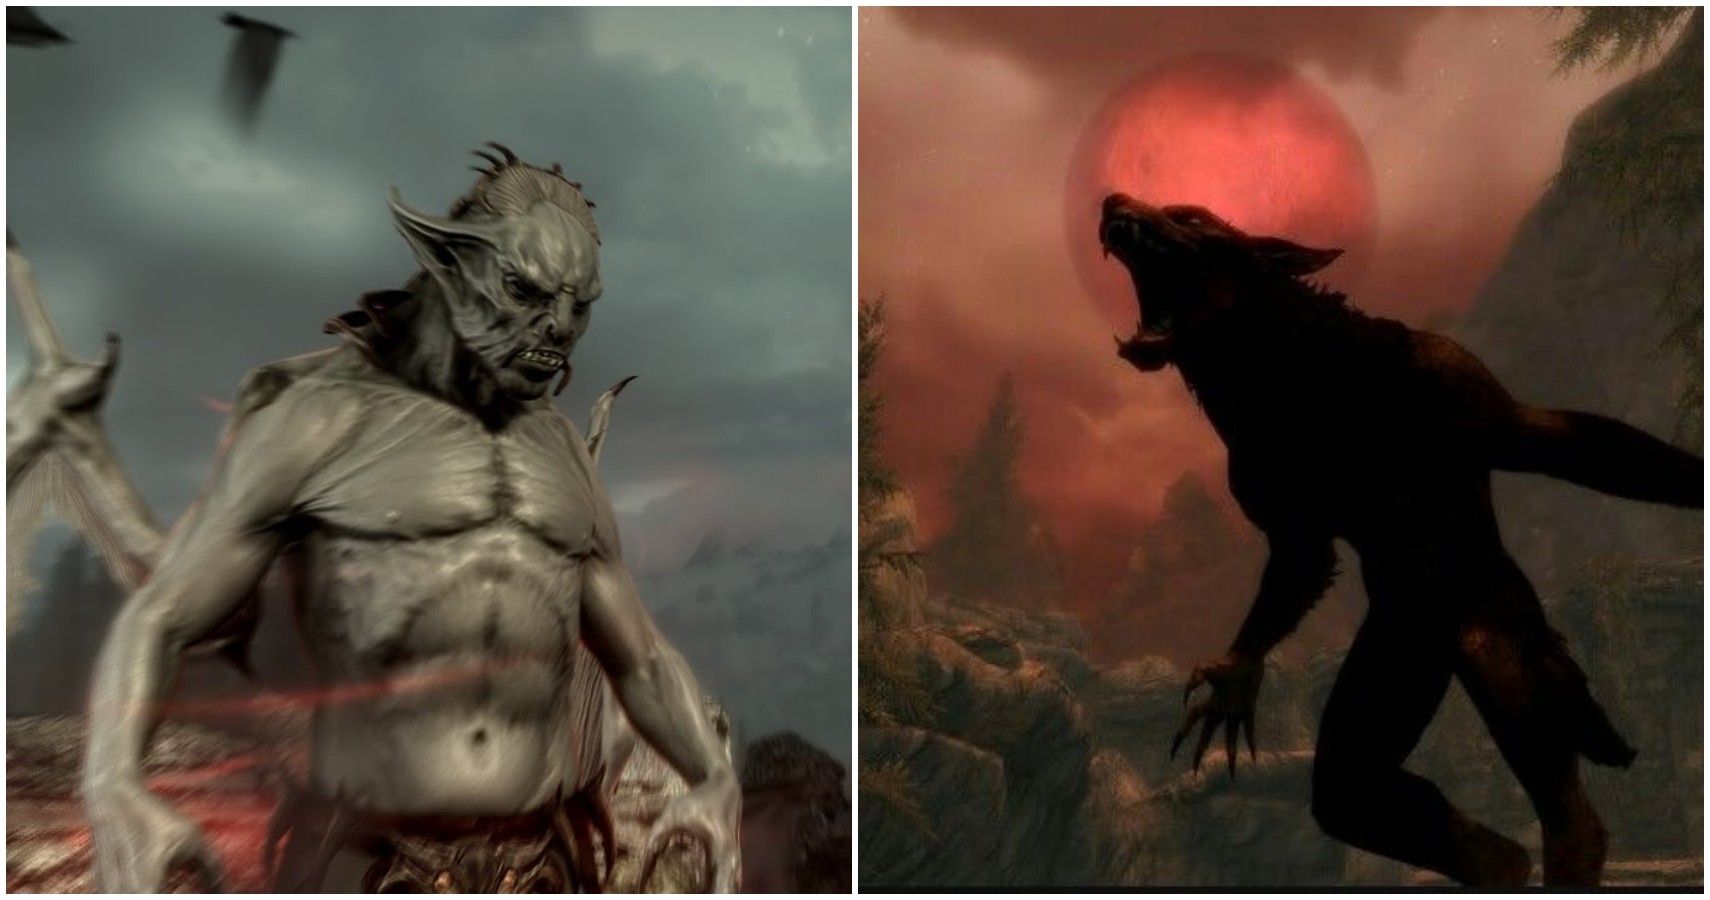 Skyrim: Vampire Vs. Werewolf - Which Is